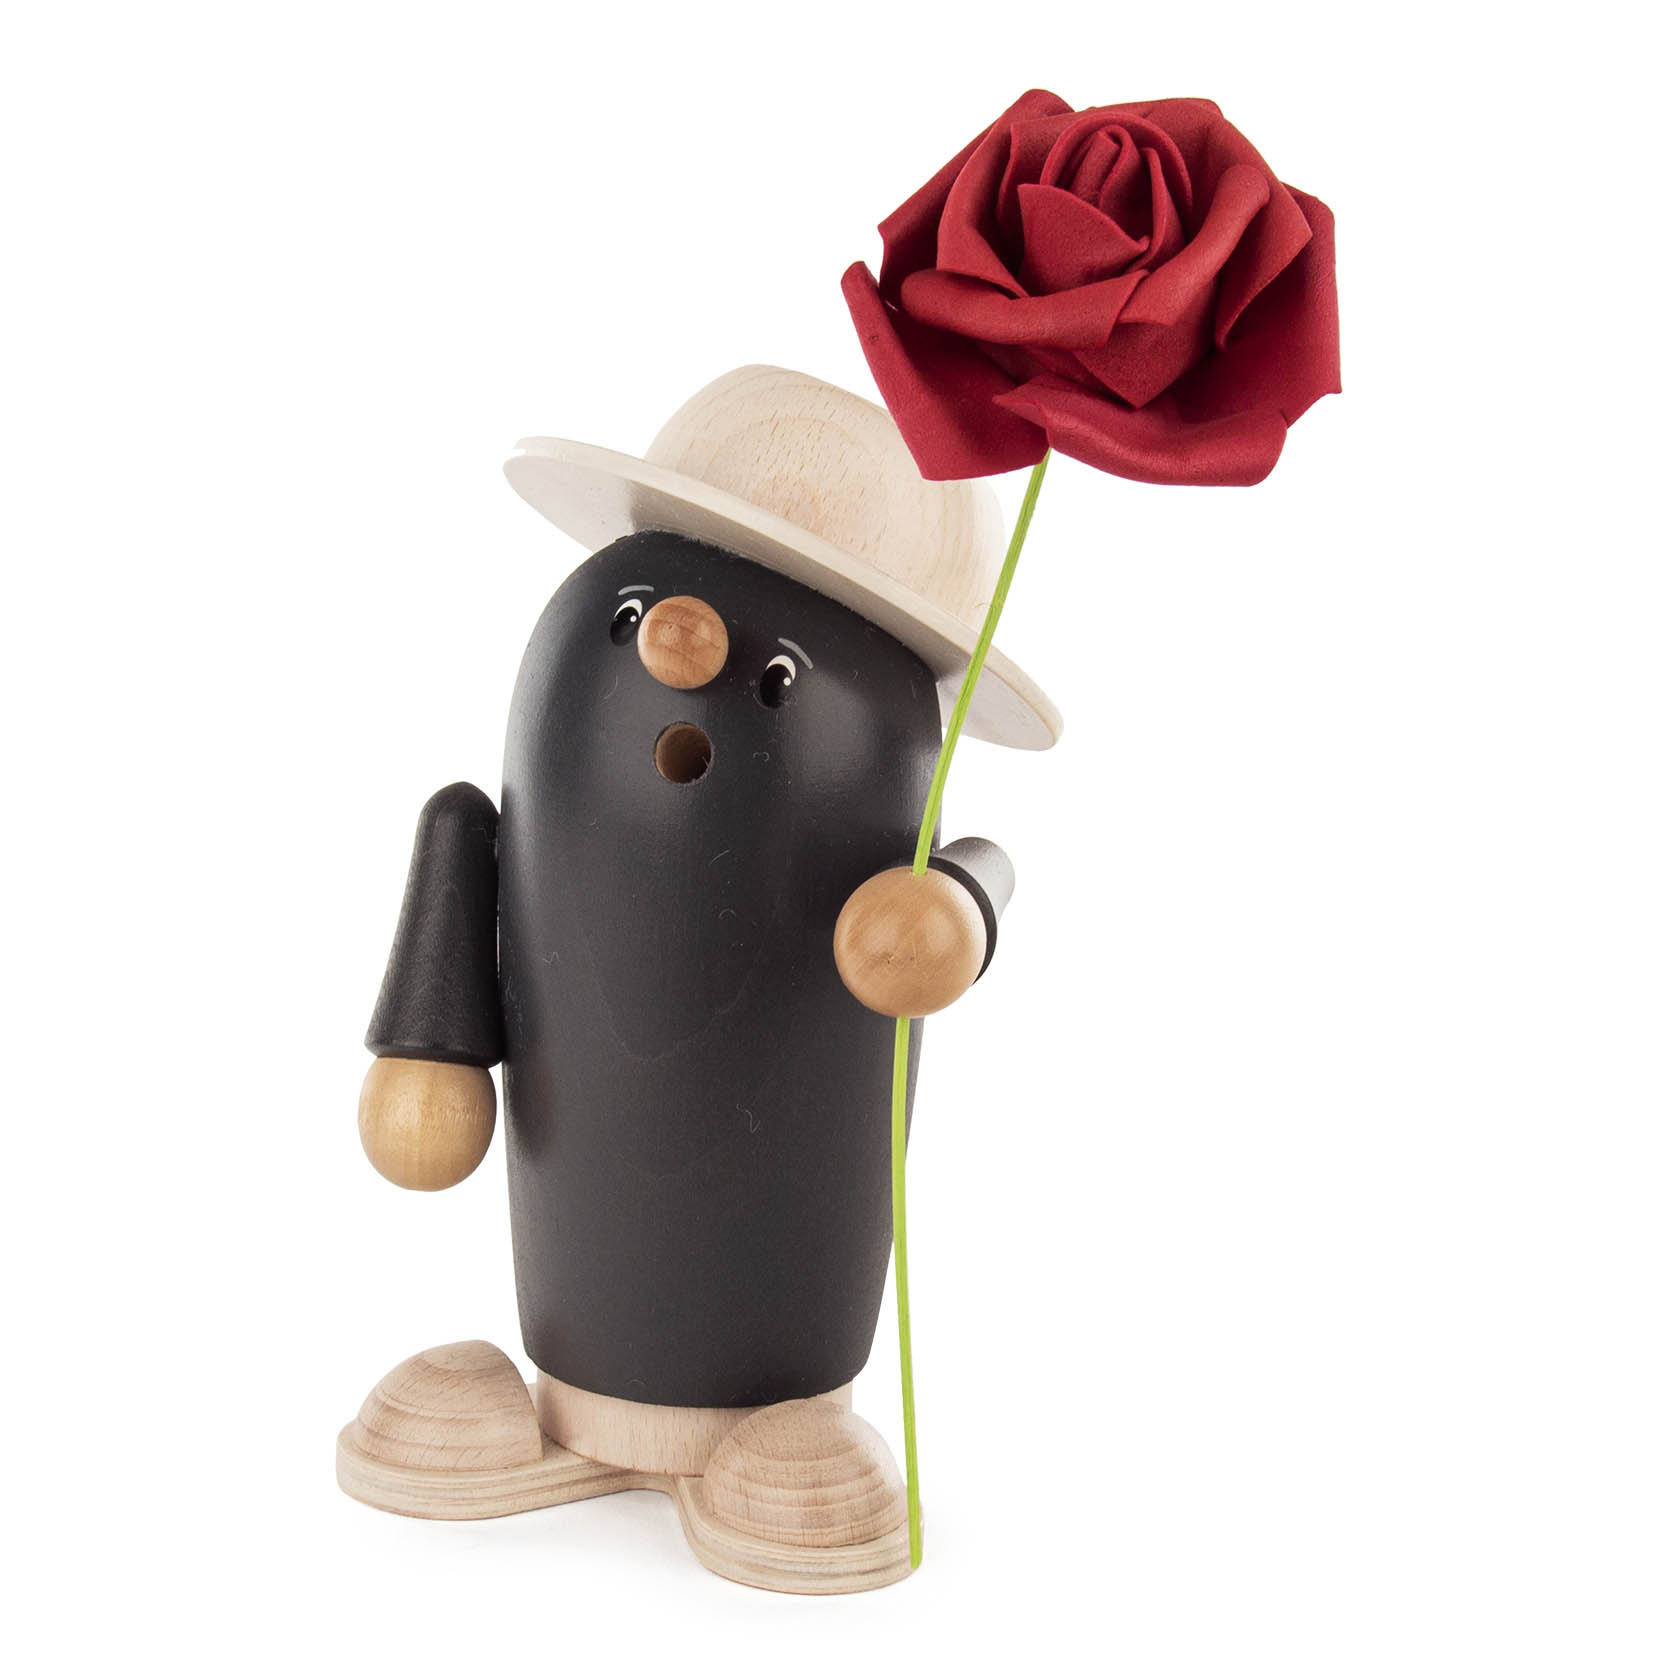 Räucherfigur "Rudi der Gentleman" grau/weiß mit Rose